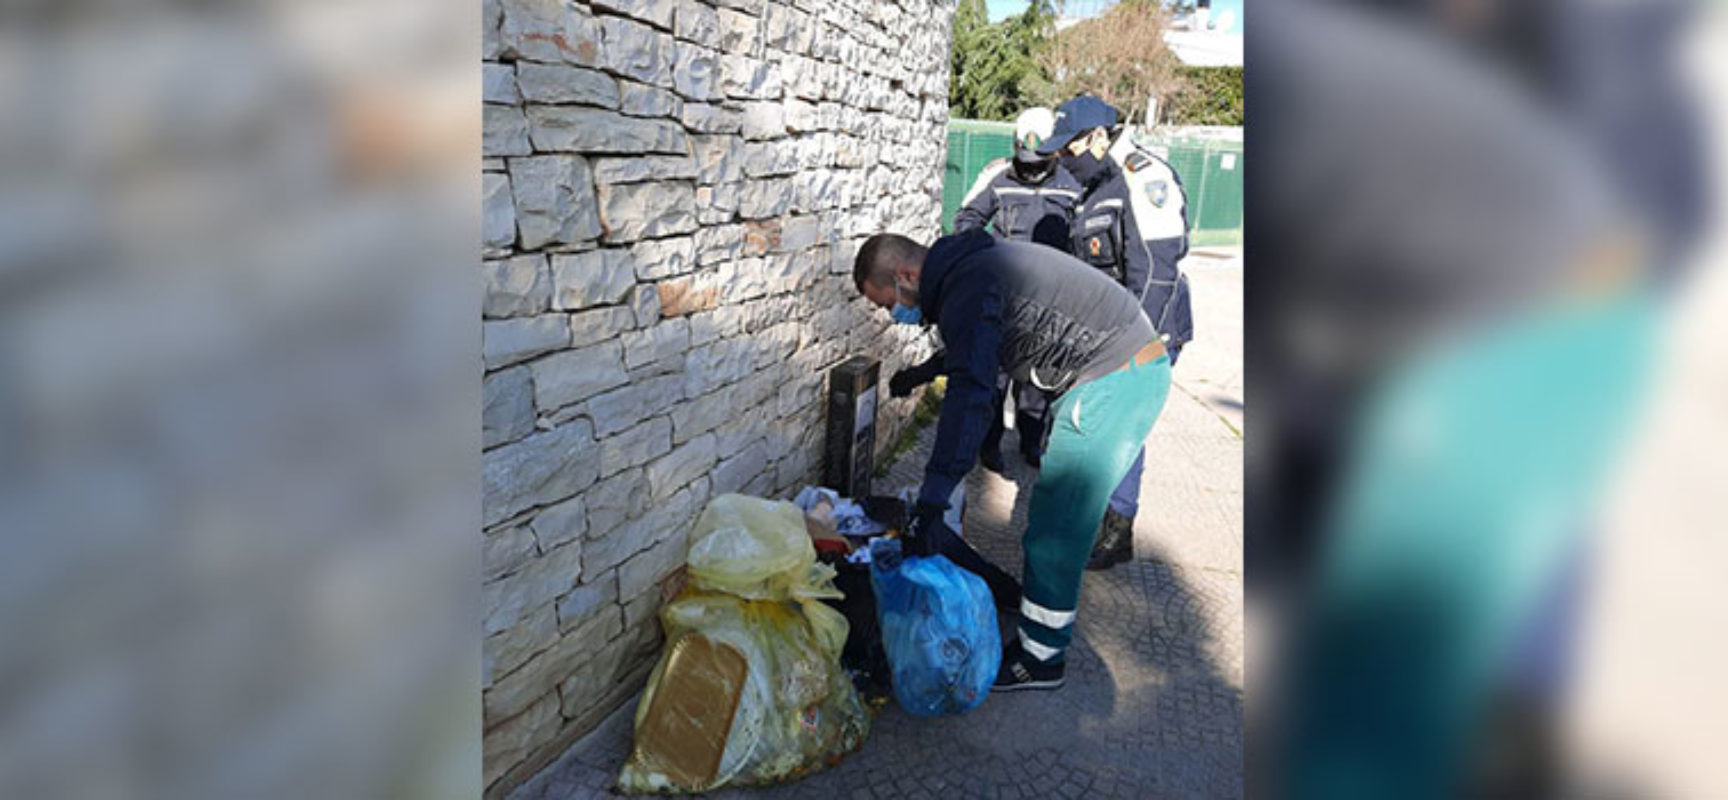 “Arresta l’abbandono di rifiuti”, campagna di sensibilizzazione del Comune di Bisceglie